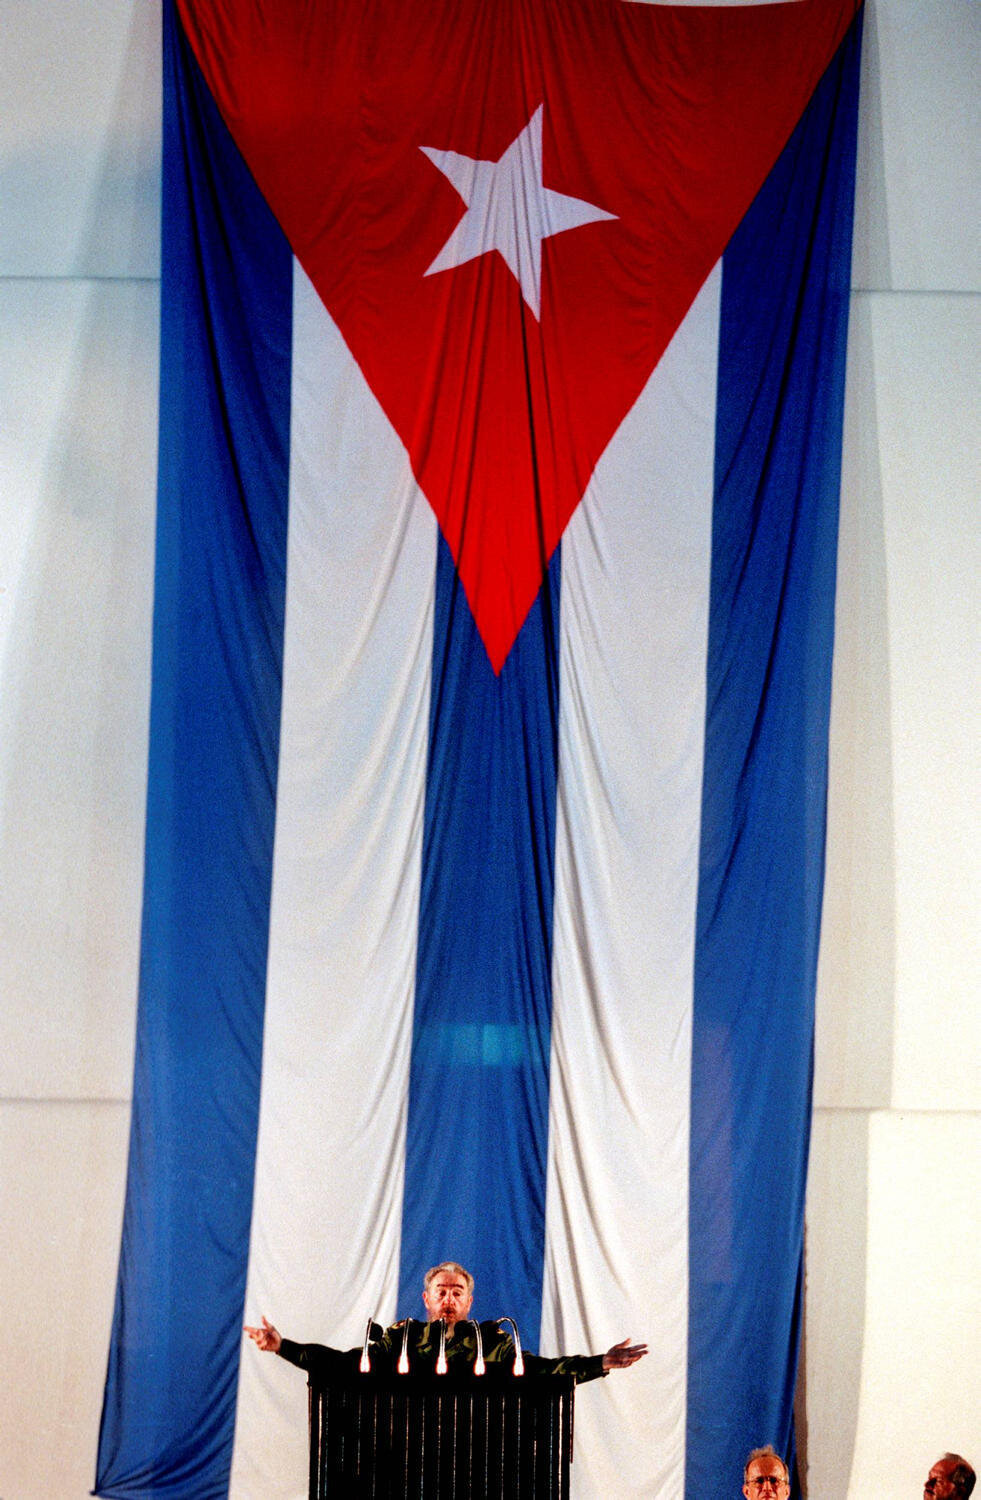  Fidel Castro,1998 